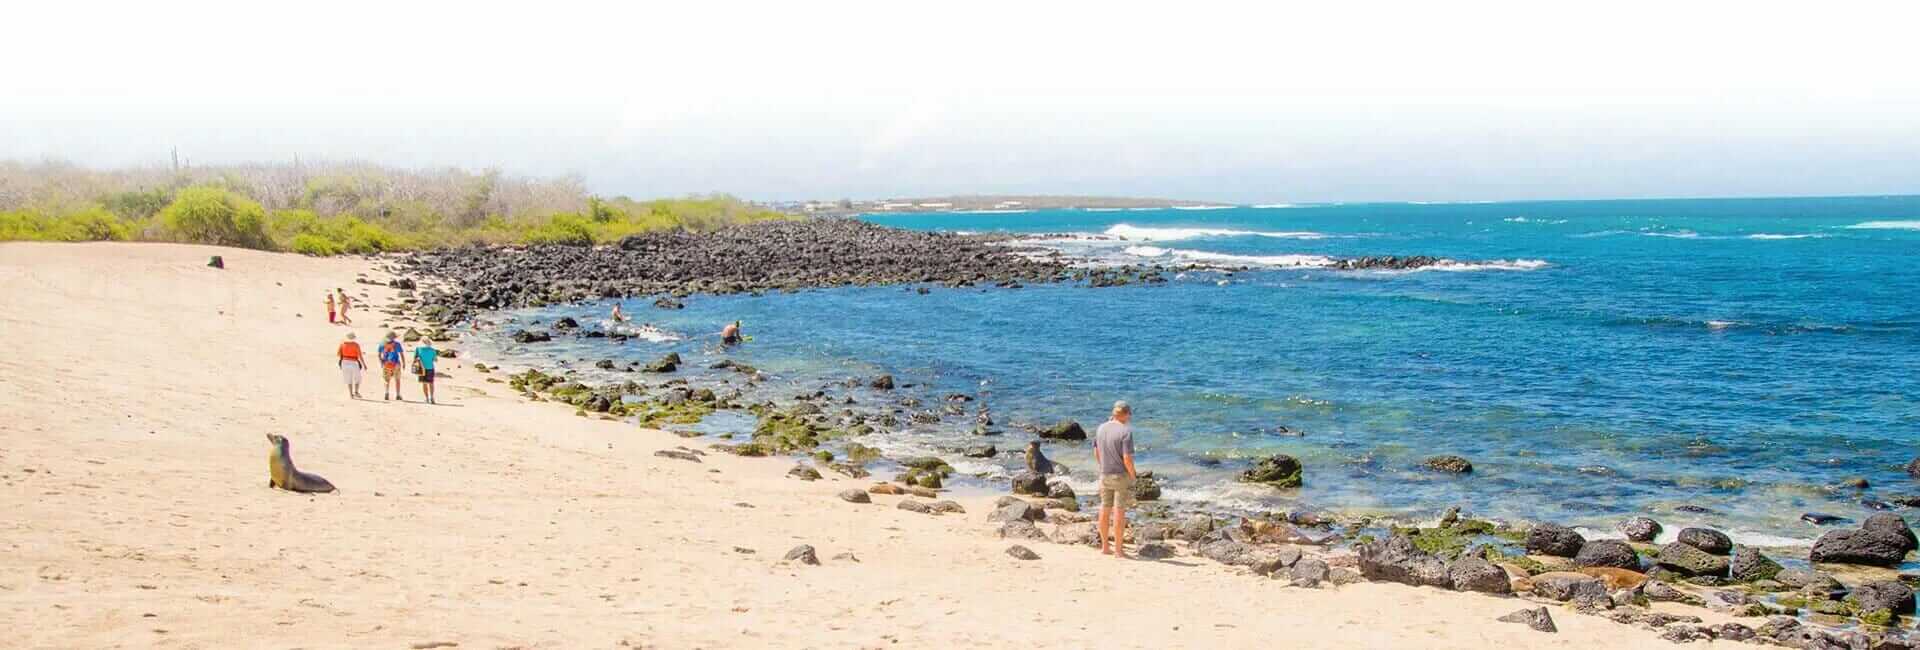 Goldener Strand der Galapagos-Inseln